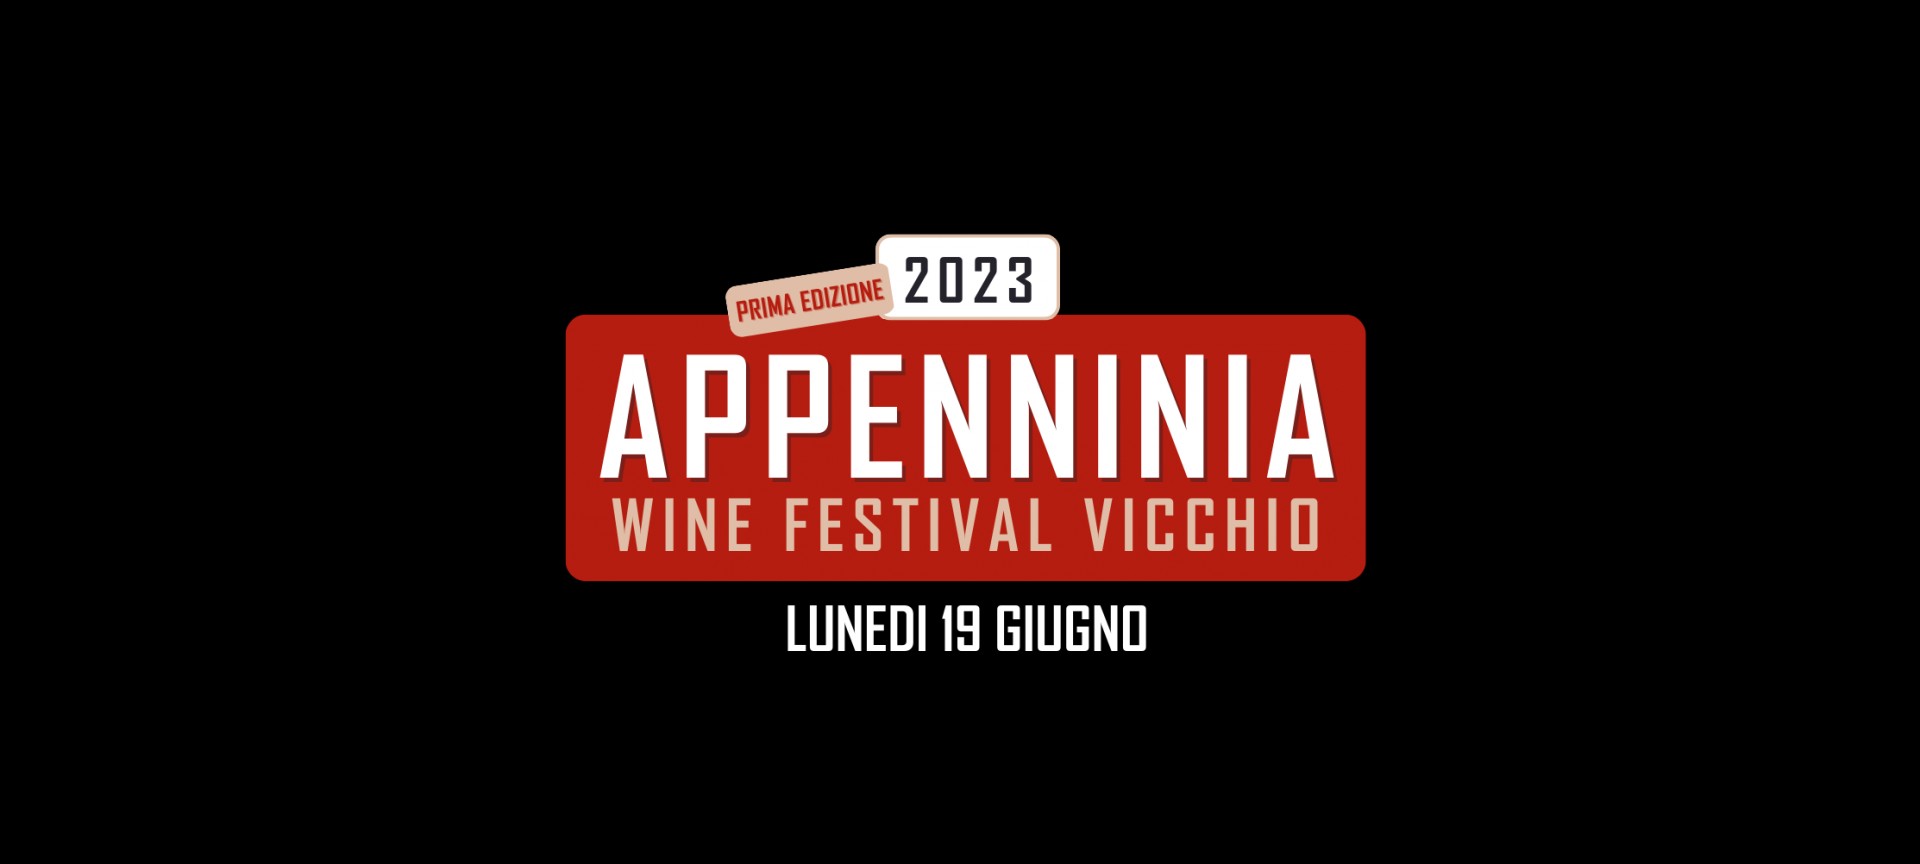 appenninia-wine-festival-vicchio